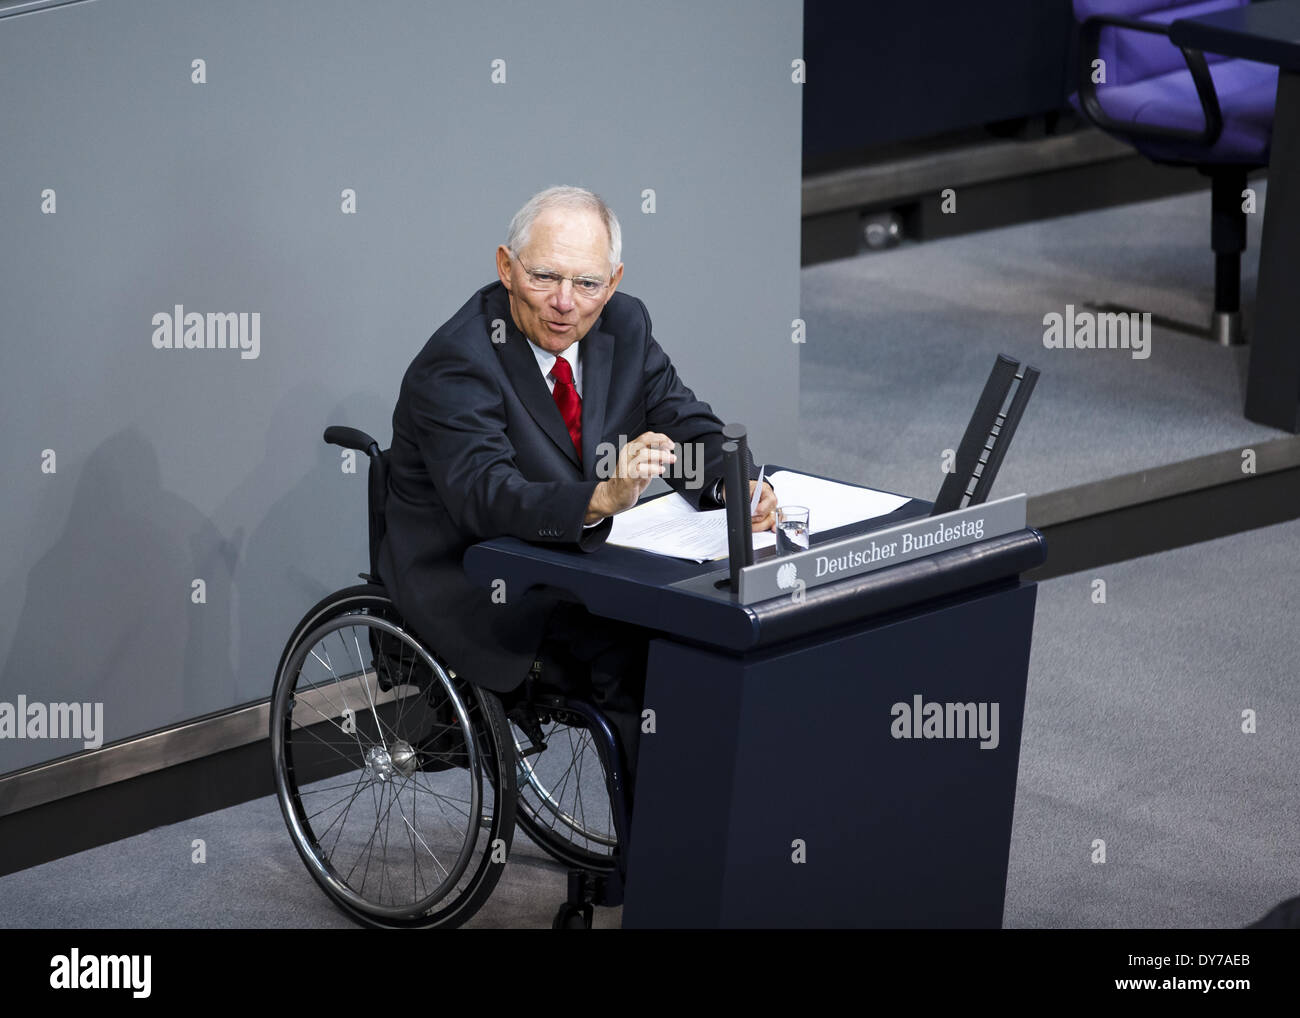 Berlin, Berlin. 8 apr, 2014. Xxviii riunione del Parlamento tedesco (Bundestag). Ministro federale delle Finanze Dr. Wolfgang Schäuble (CDU) introduce il progetto di bilancio del governo per il 2014. In essa le spese sono in corrispondenza di un valore di 298.5 miliardi di euro (2013: 310 miliardi di euro) prevista. - (In riunione settimanale da martedì 8 aprile a venerdì 11 aprile, 2014, il Bundestag si consulta sulla famiglia per il 2014.) -/Immagine: Wolfgang Schäuble (CDU), il ministro tedesco delle finanze. (Foto di Reynaldo Paganelli/NurPhoto) Credito: Reynaldo Paganelli/NurPhoto/ZUMAPRESS.com/Alamy Live News Foto Stock